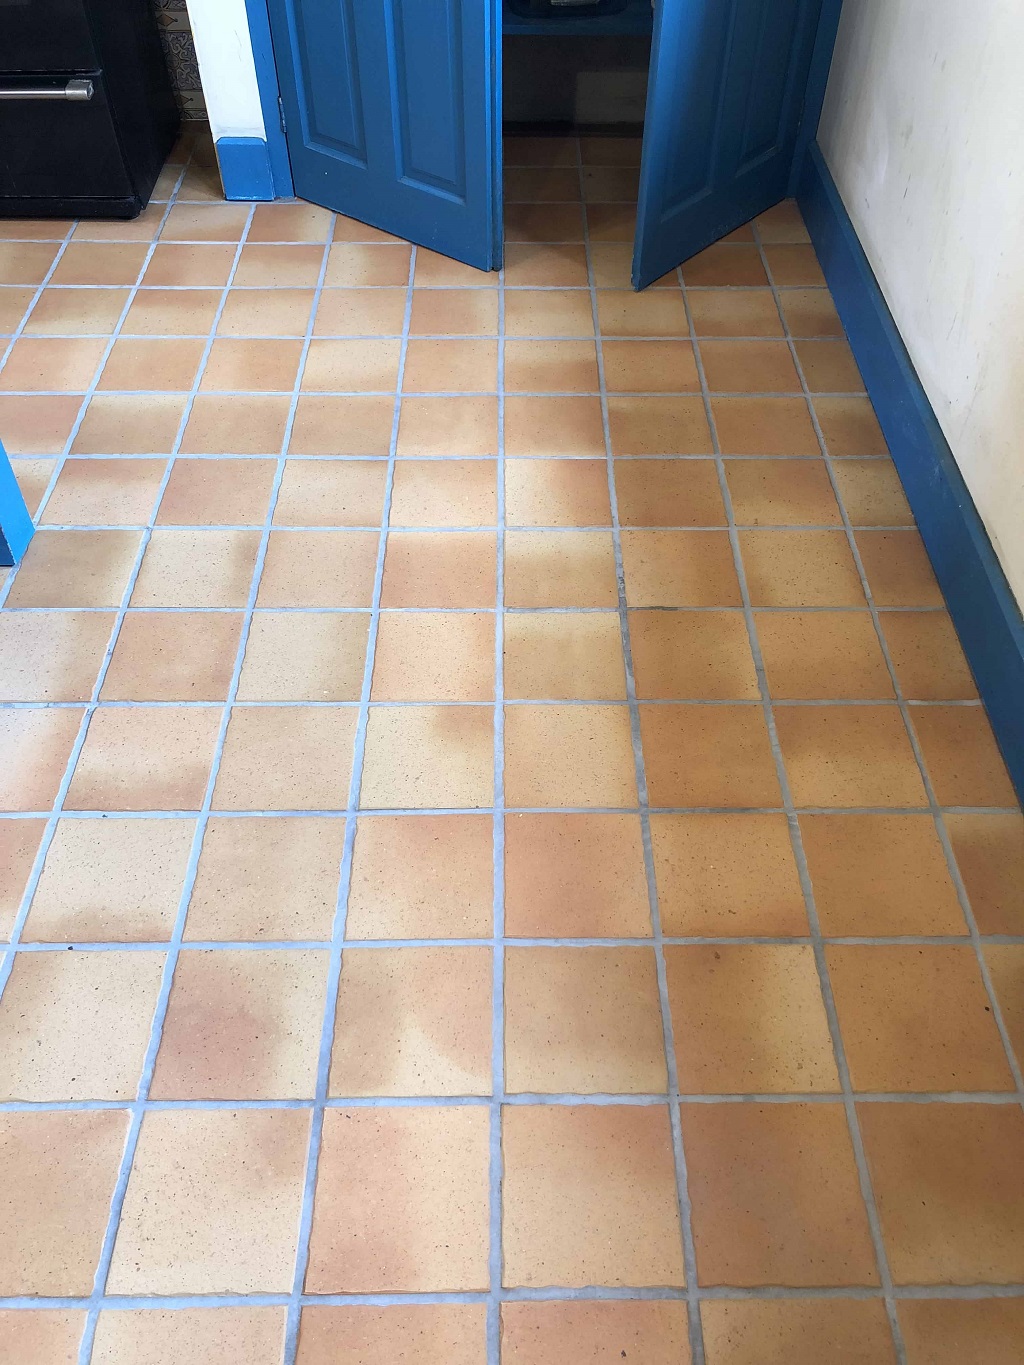 Porcelain Tiled Kitchen Floor After Cleaning Ely